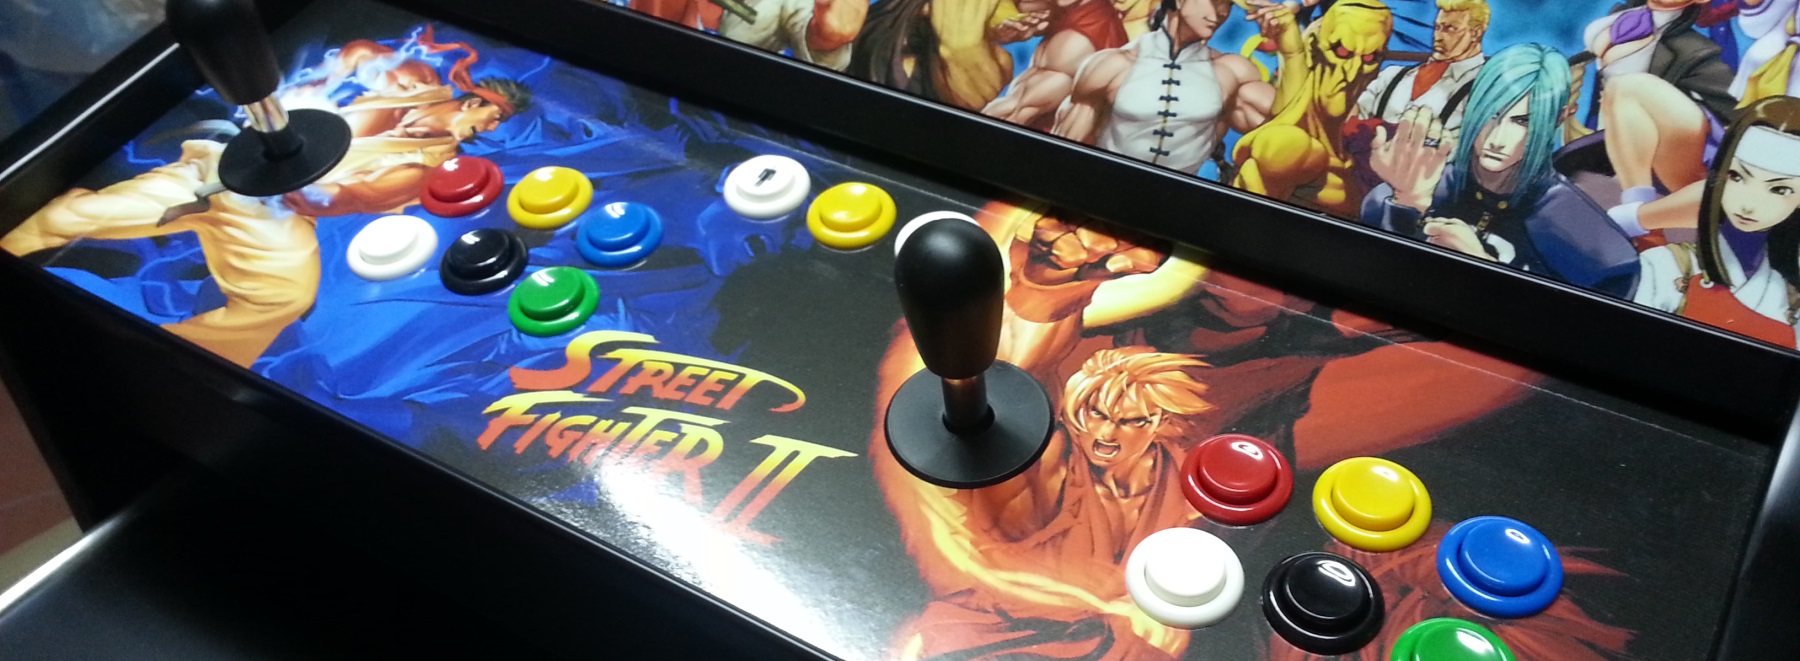 Street Fighter (inspirada en el clásico juego de lucha)